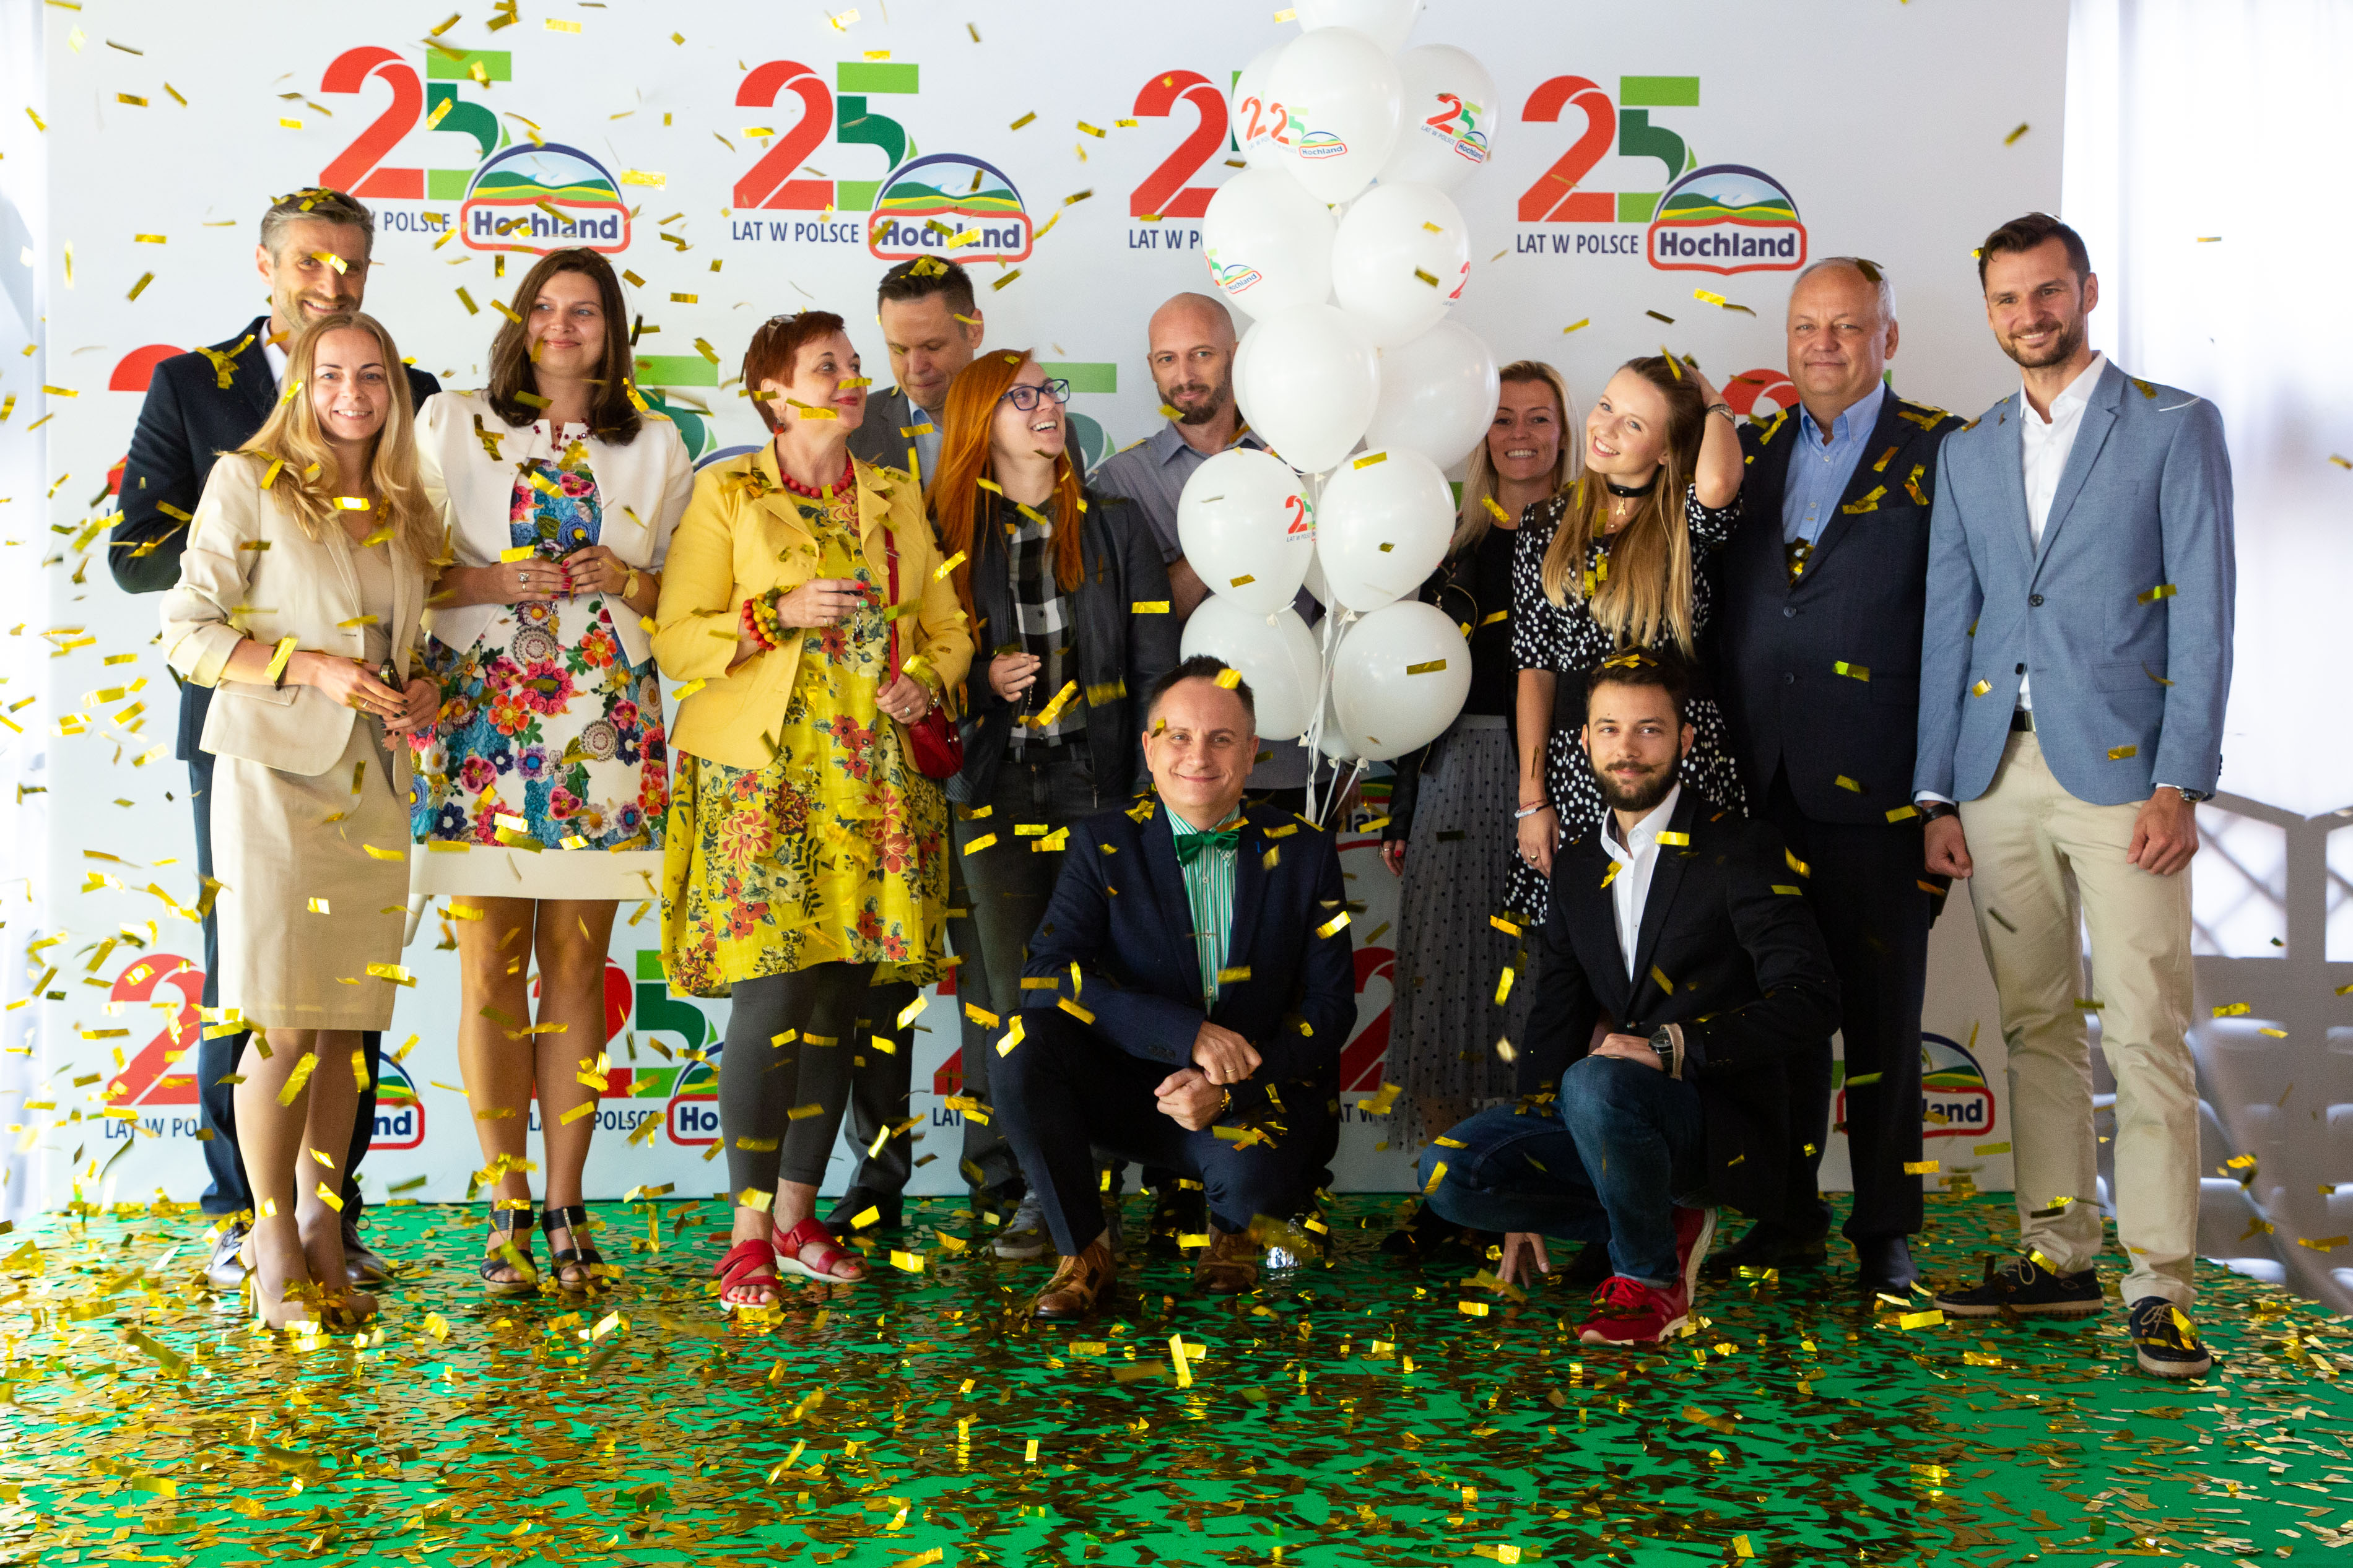 Zwycięzcy Odebrali Kluczyki Do Samochodów! Finał Urodzinowej Loterii Hochland – To Jest Pyszne Od 25 Lat - All About Life